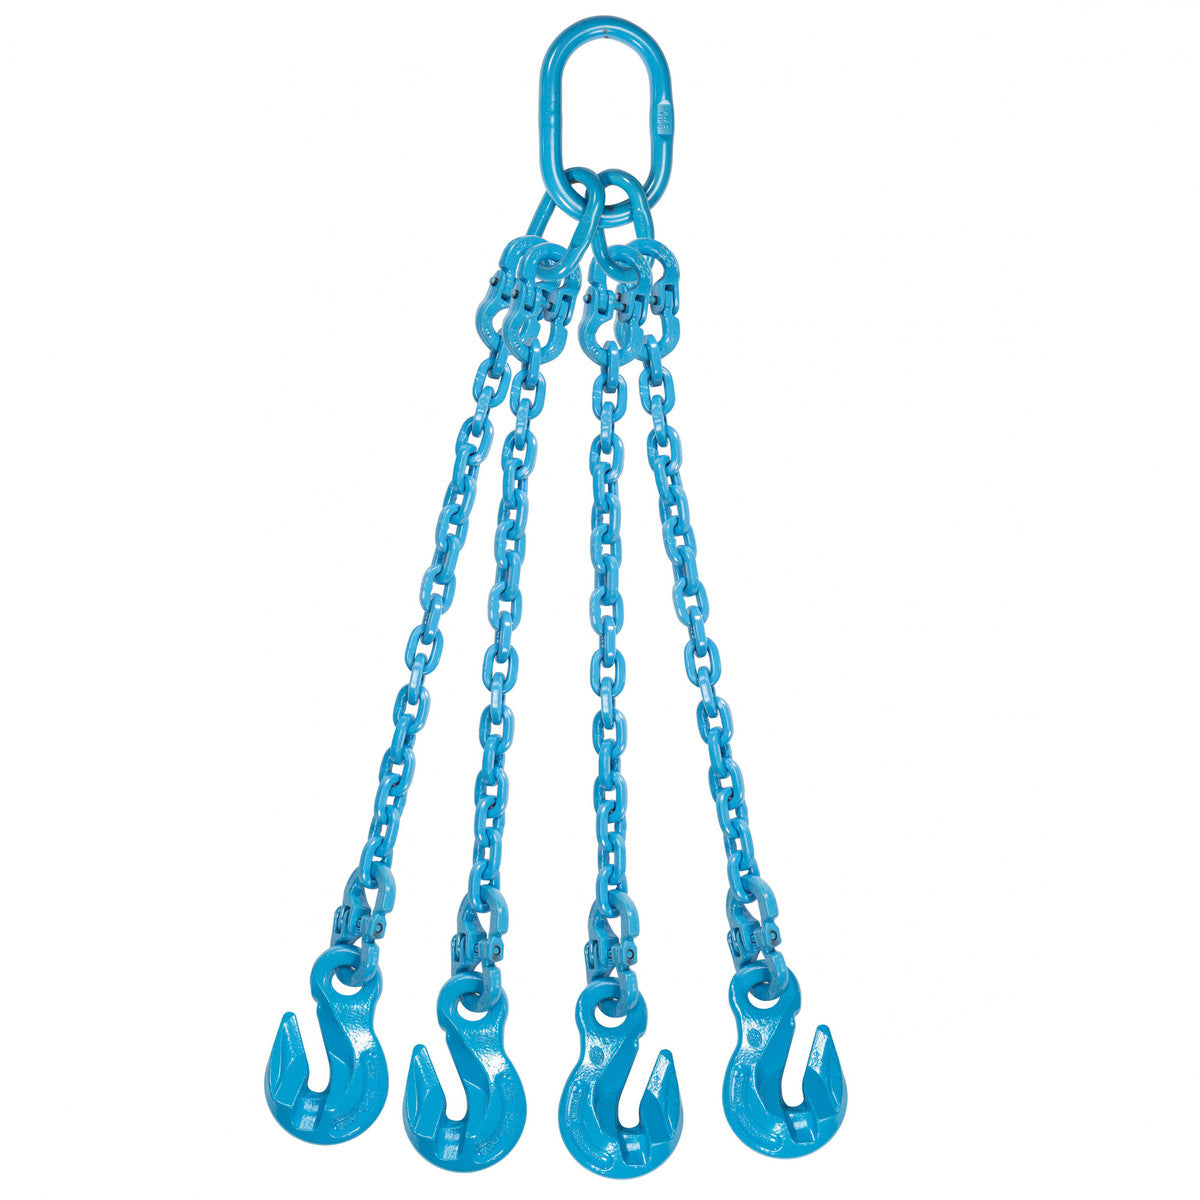 9/32" x 8' - Pewag 4 Leg Chain Sling w/ Grab Hooks - Grade 120